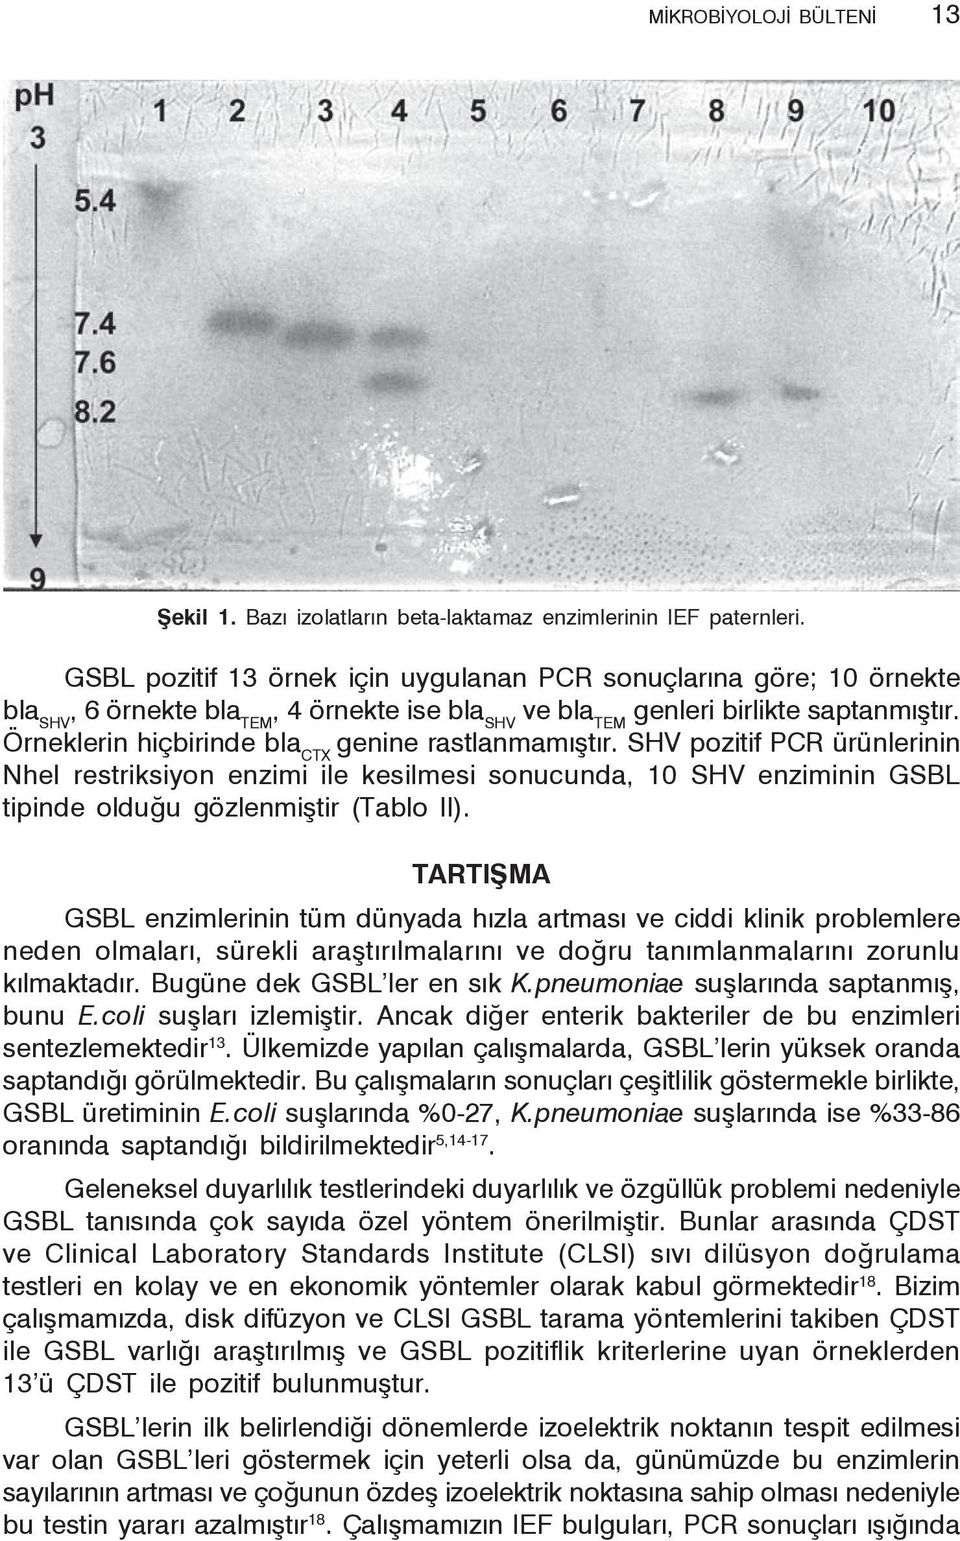 Örneklerin hiçbirinde bla CTX genine rastlanmamıştır. SHV pozitif PCR ürünlerinin NheI restriksiyon enzimi ile kesilmesi sonucunda, 10 SHV enziminin GSBL tipinde olduğu gözlenmiştir (Tablo II).